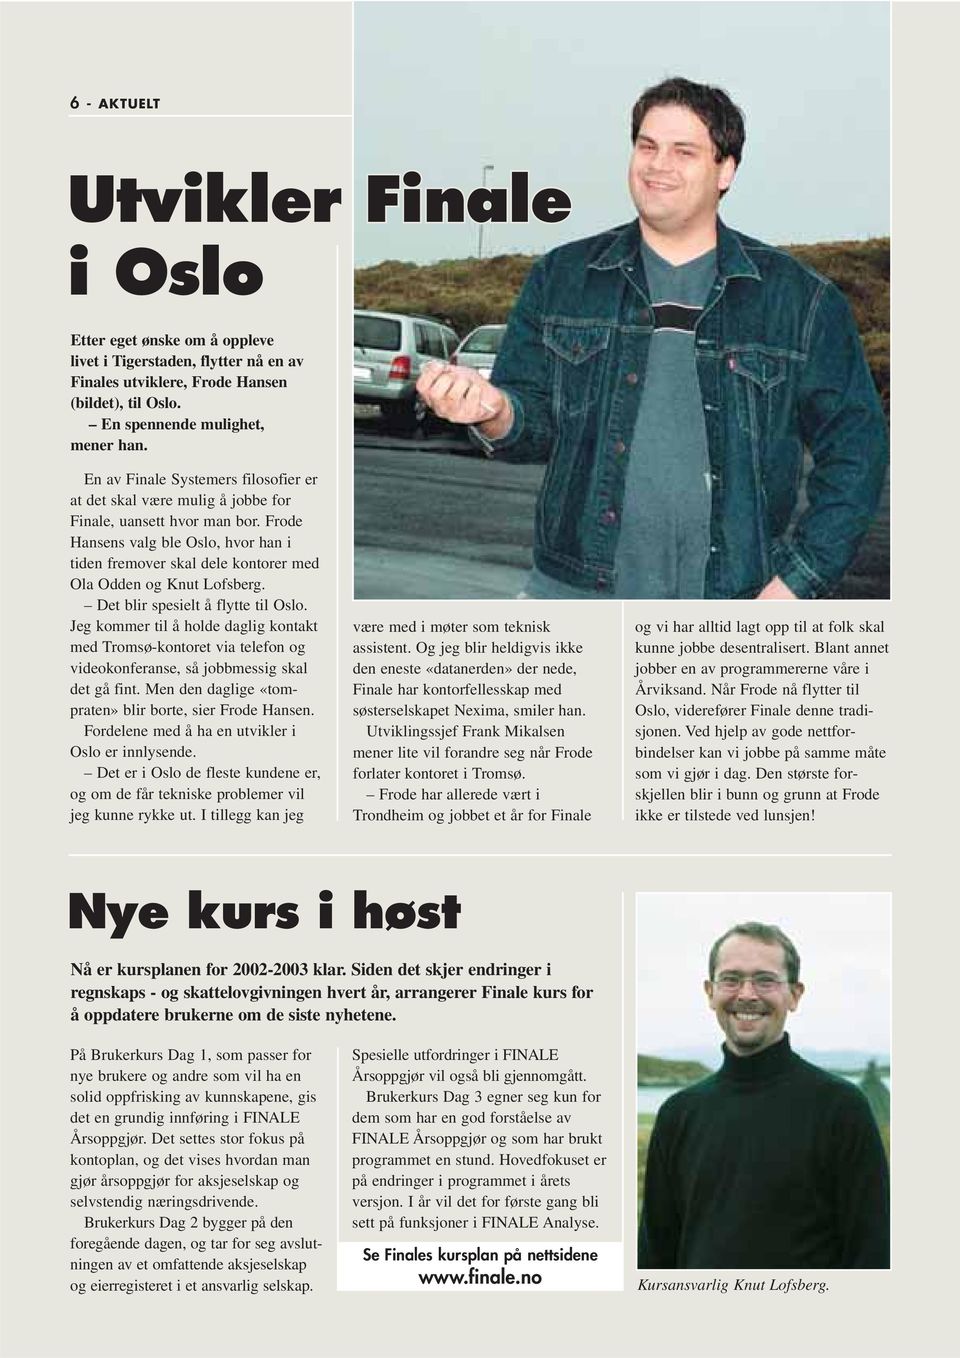 Frode Hansens valg ble Oslo, hvor han i tiden fremover skal dele kontorer med Ola Odden og Knut Lofsberg. Det blir spesielt å flytte til Oslo.